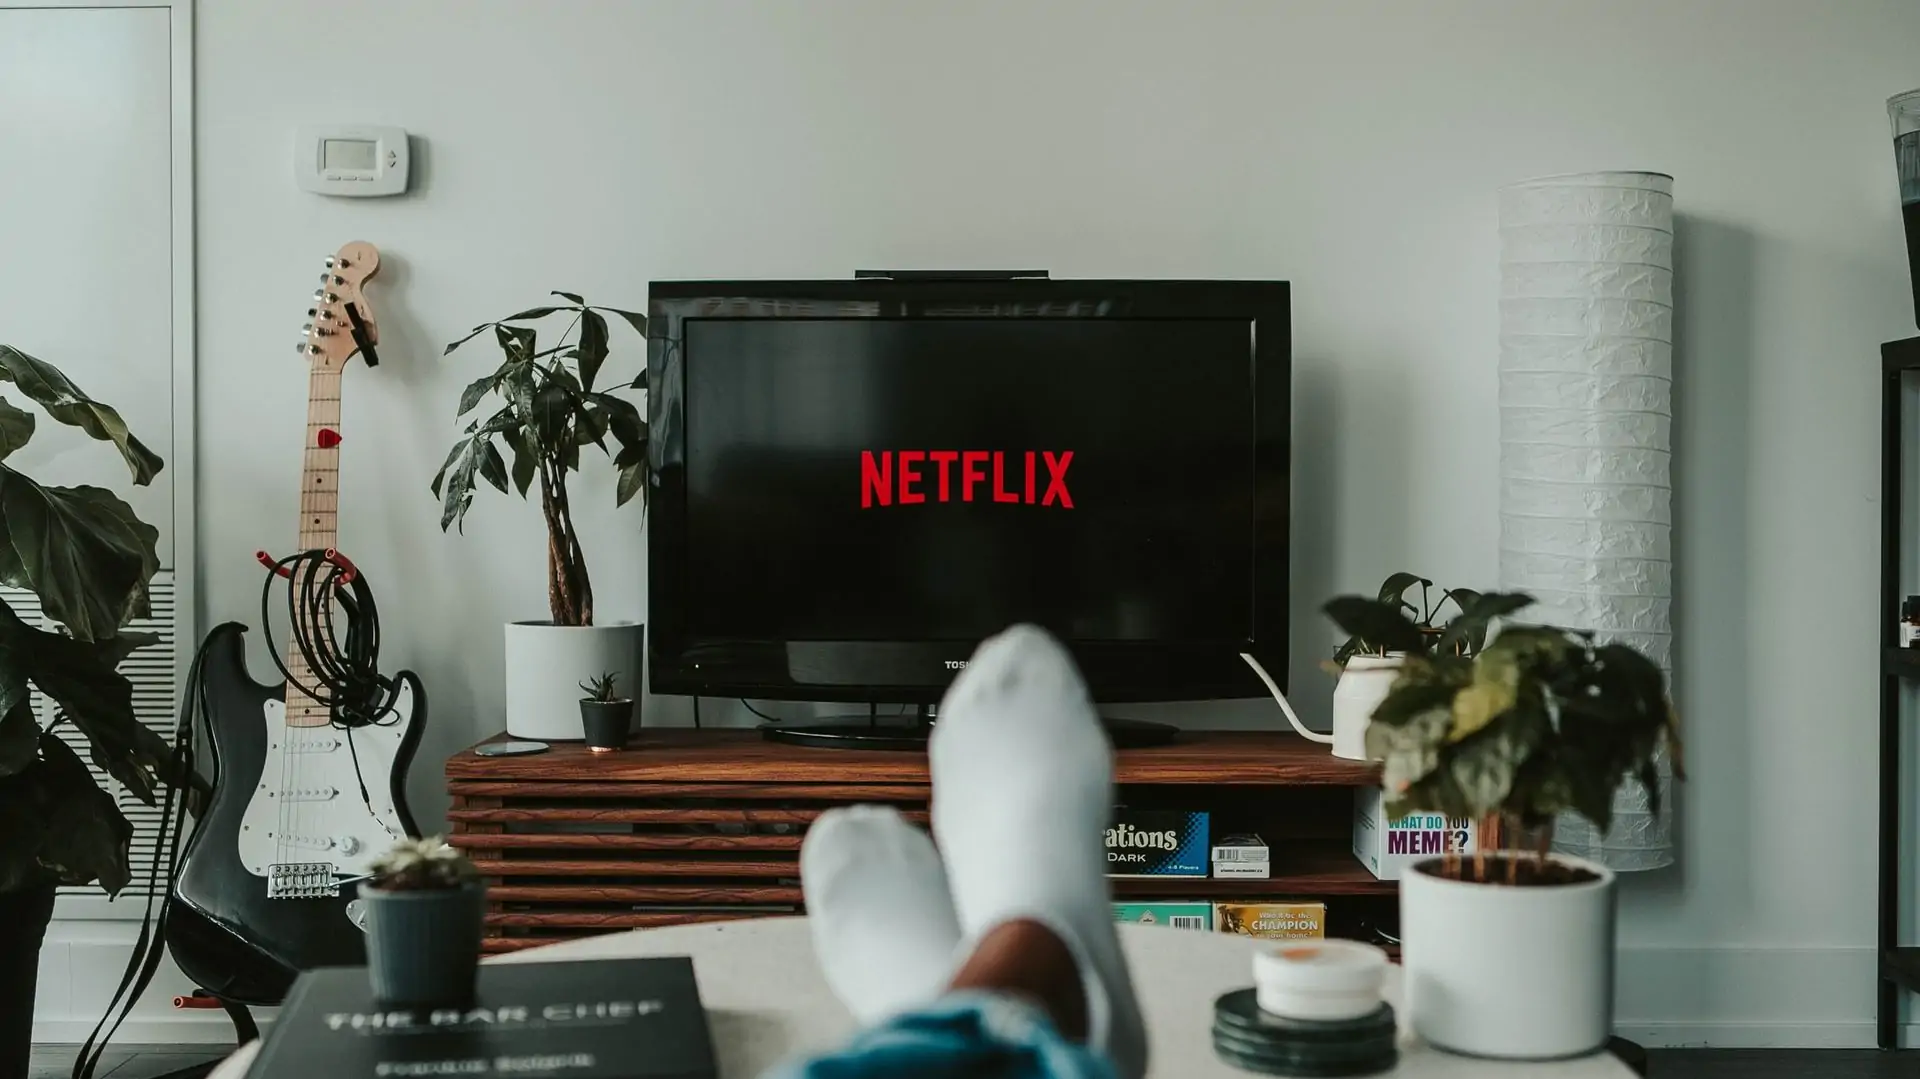 voeten voor tv met netflix-logo op scherm